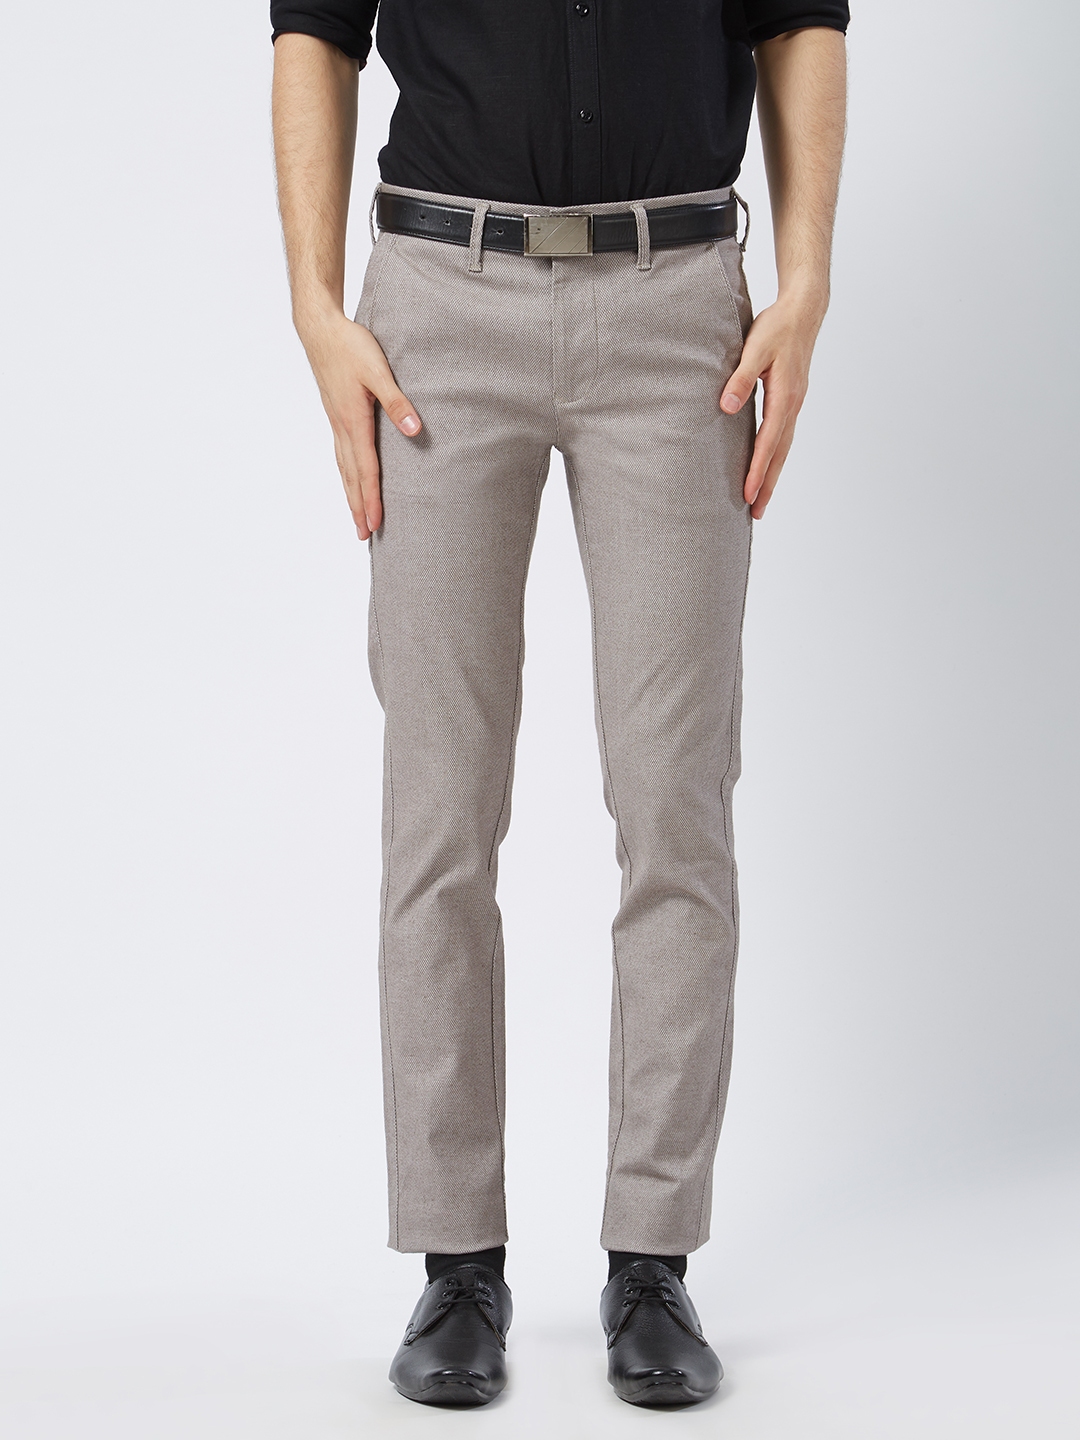 Buy Killer Men Grey Comfort Slim Fit Self Design Formal Trousers ...